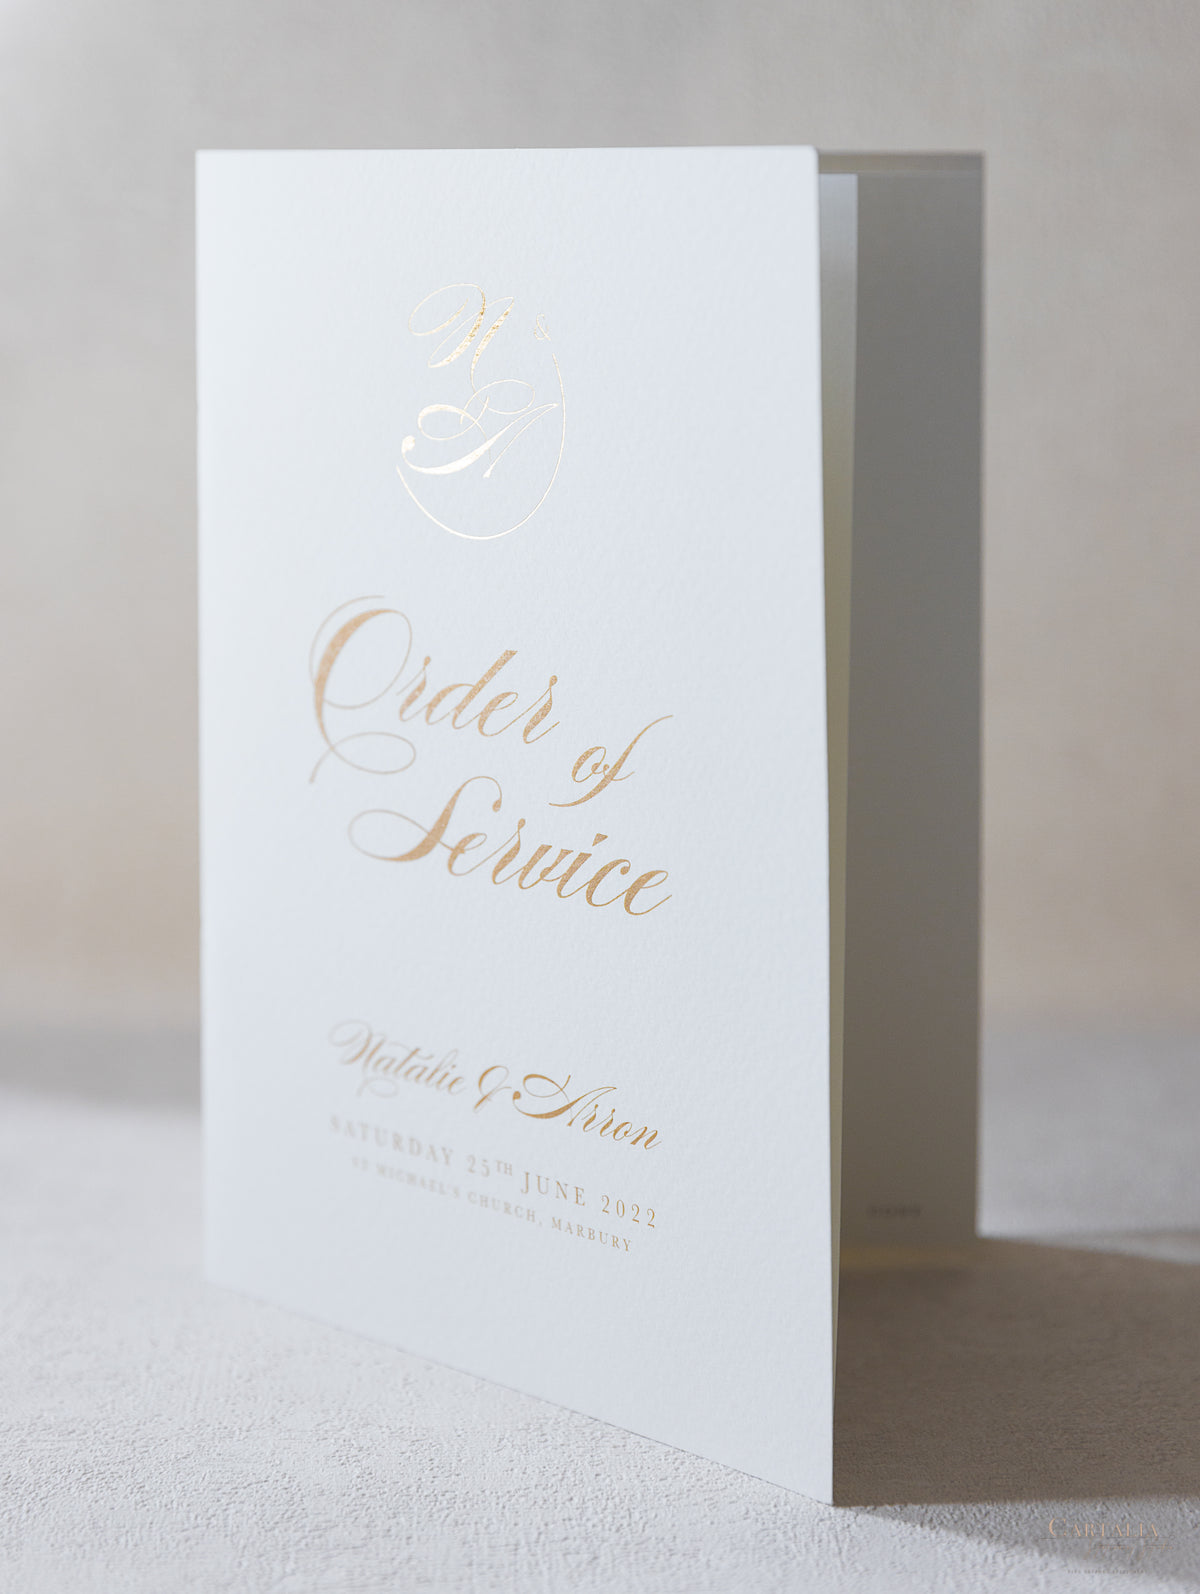 Livret de luxe Classic Order of Service avec monogramme sur feuille d'or